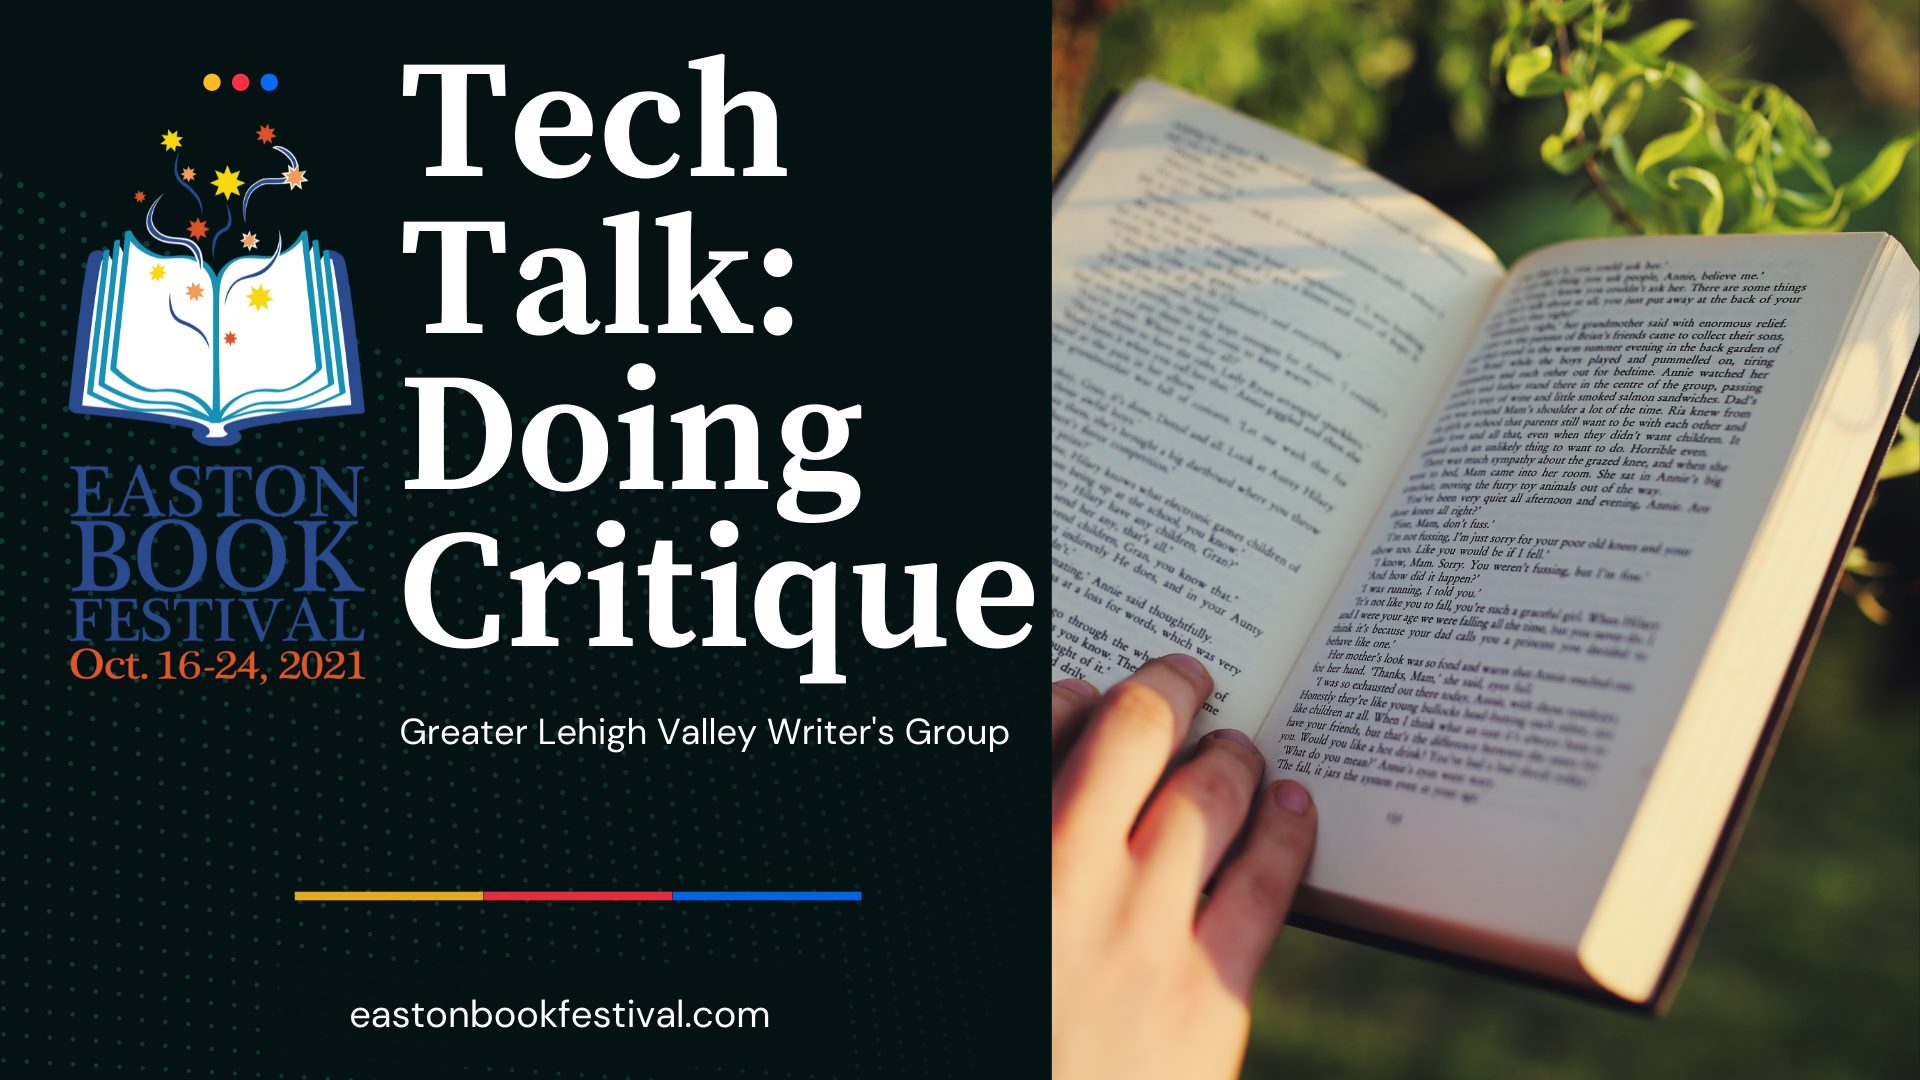 Doing Critique Tech Talk